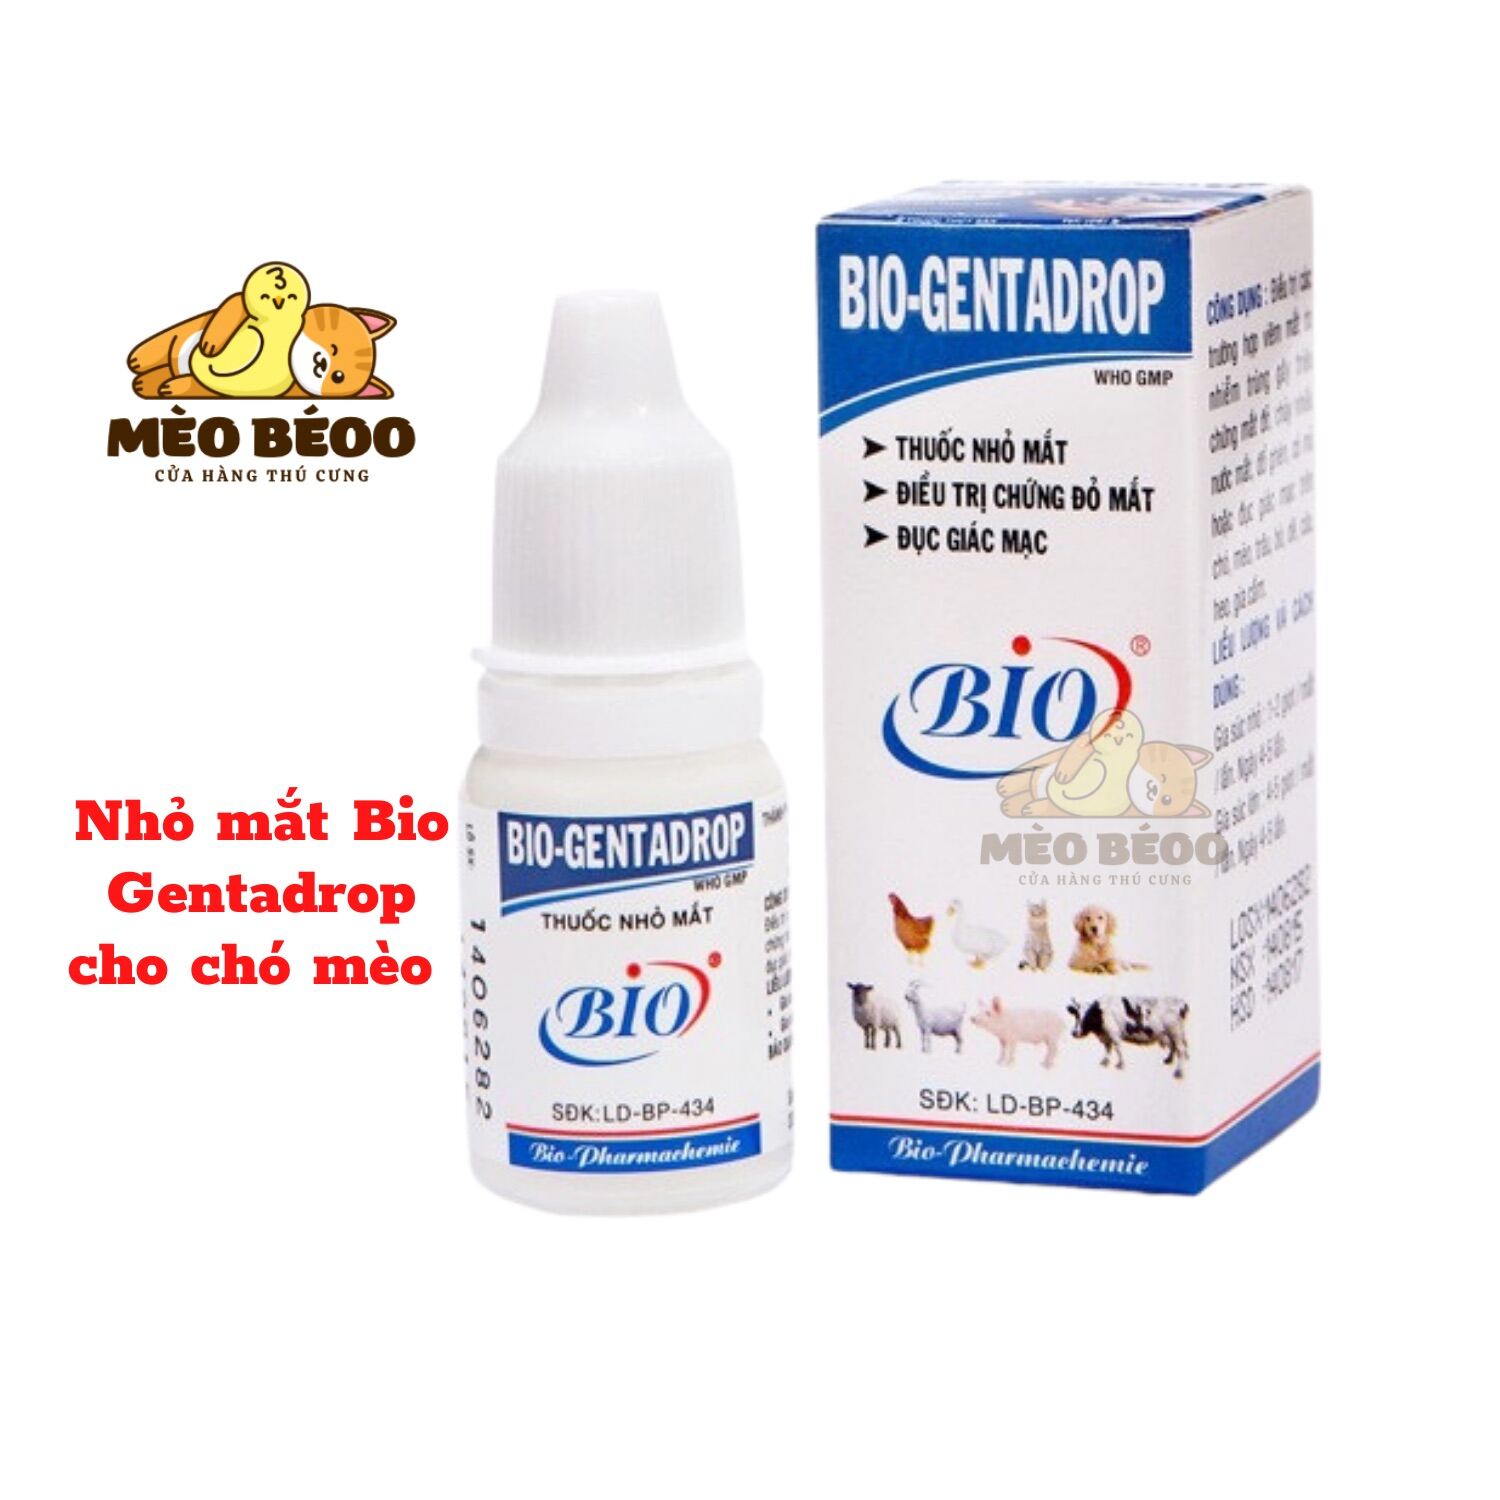 Thuốc Nhỏ Mắt cho Chó Mèo Bio - Gentadrop 10ml